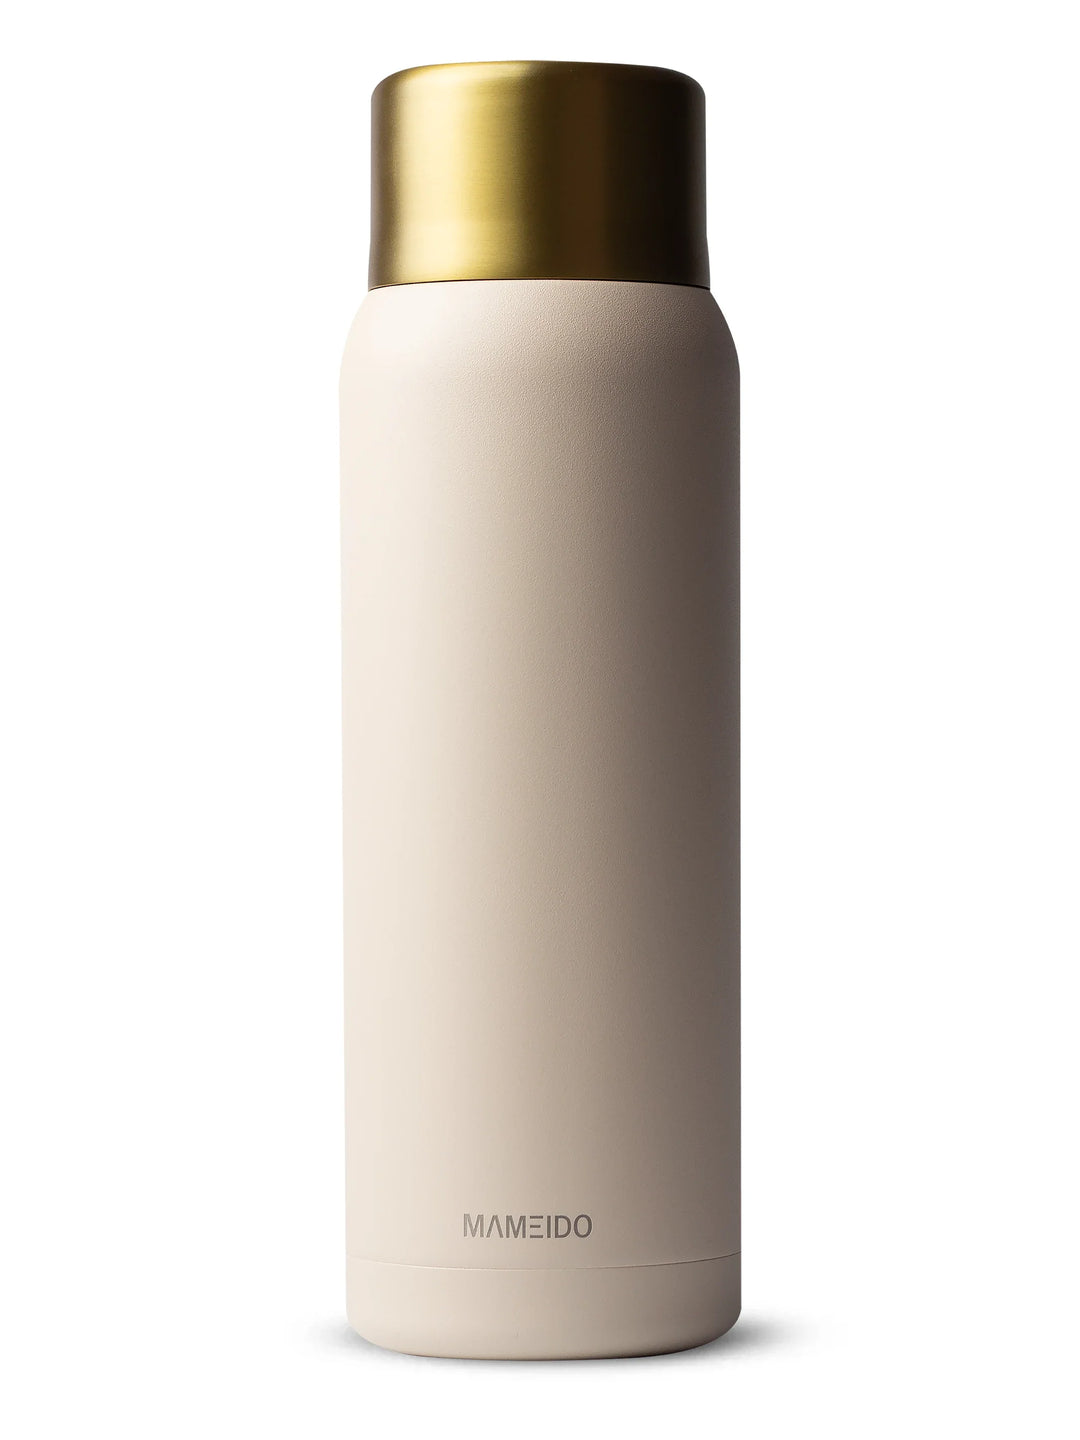 MAMEIDO Thermosflasche mit Druckknopf & Trinkbecher 1000ml in Ivory Beige Gold #farbe_ivory-beige-gold